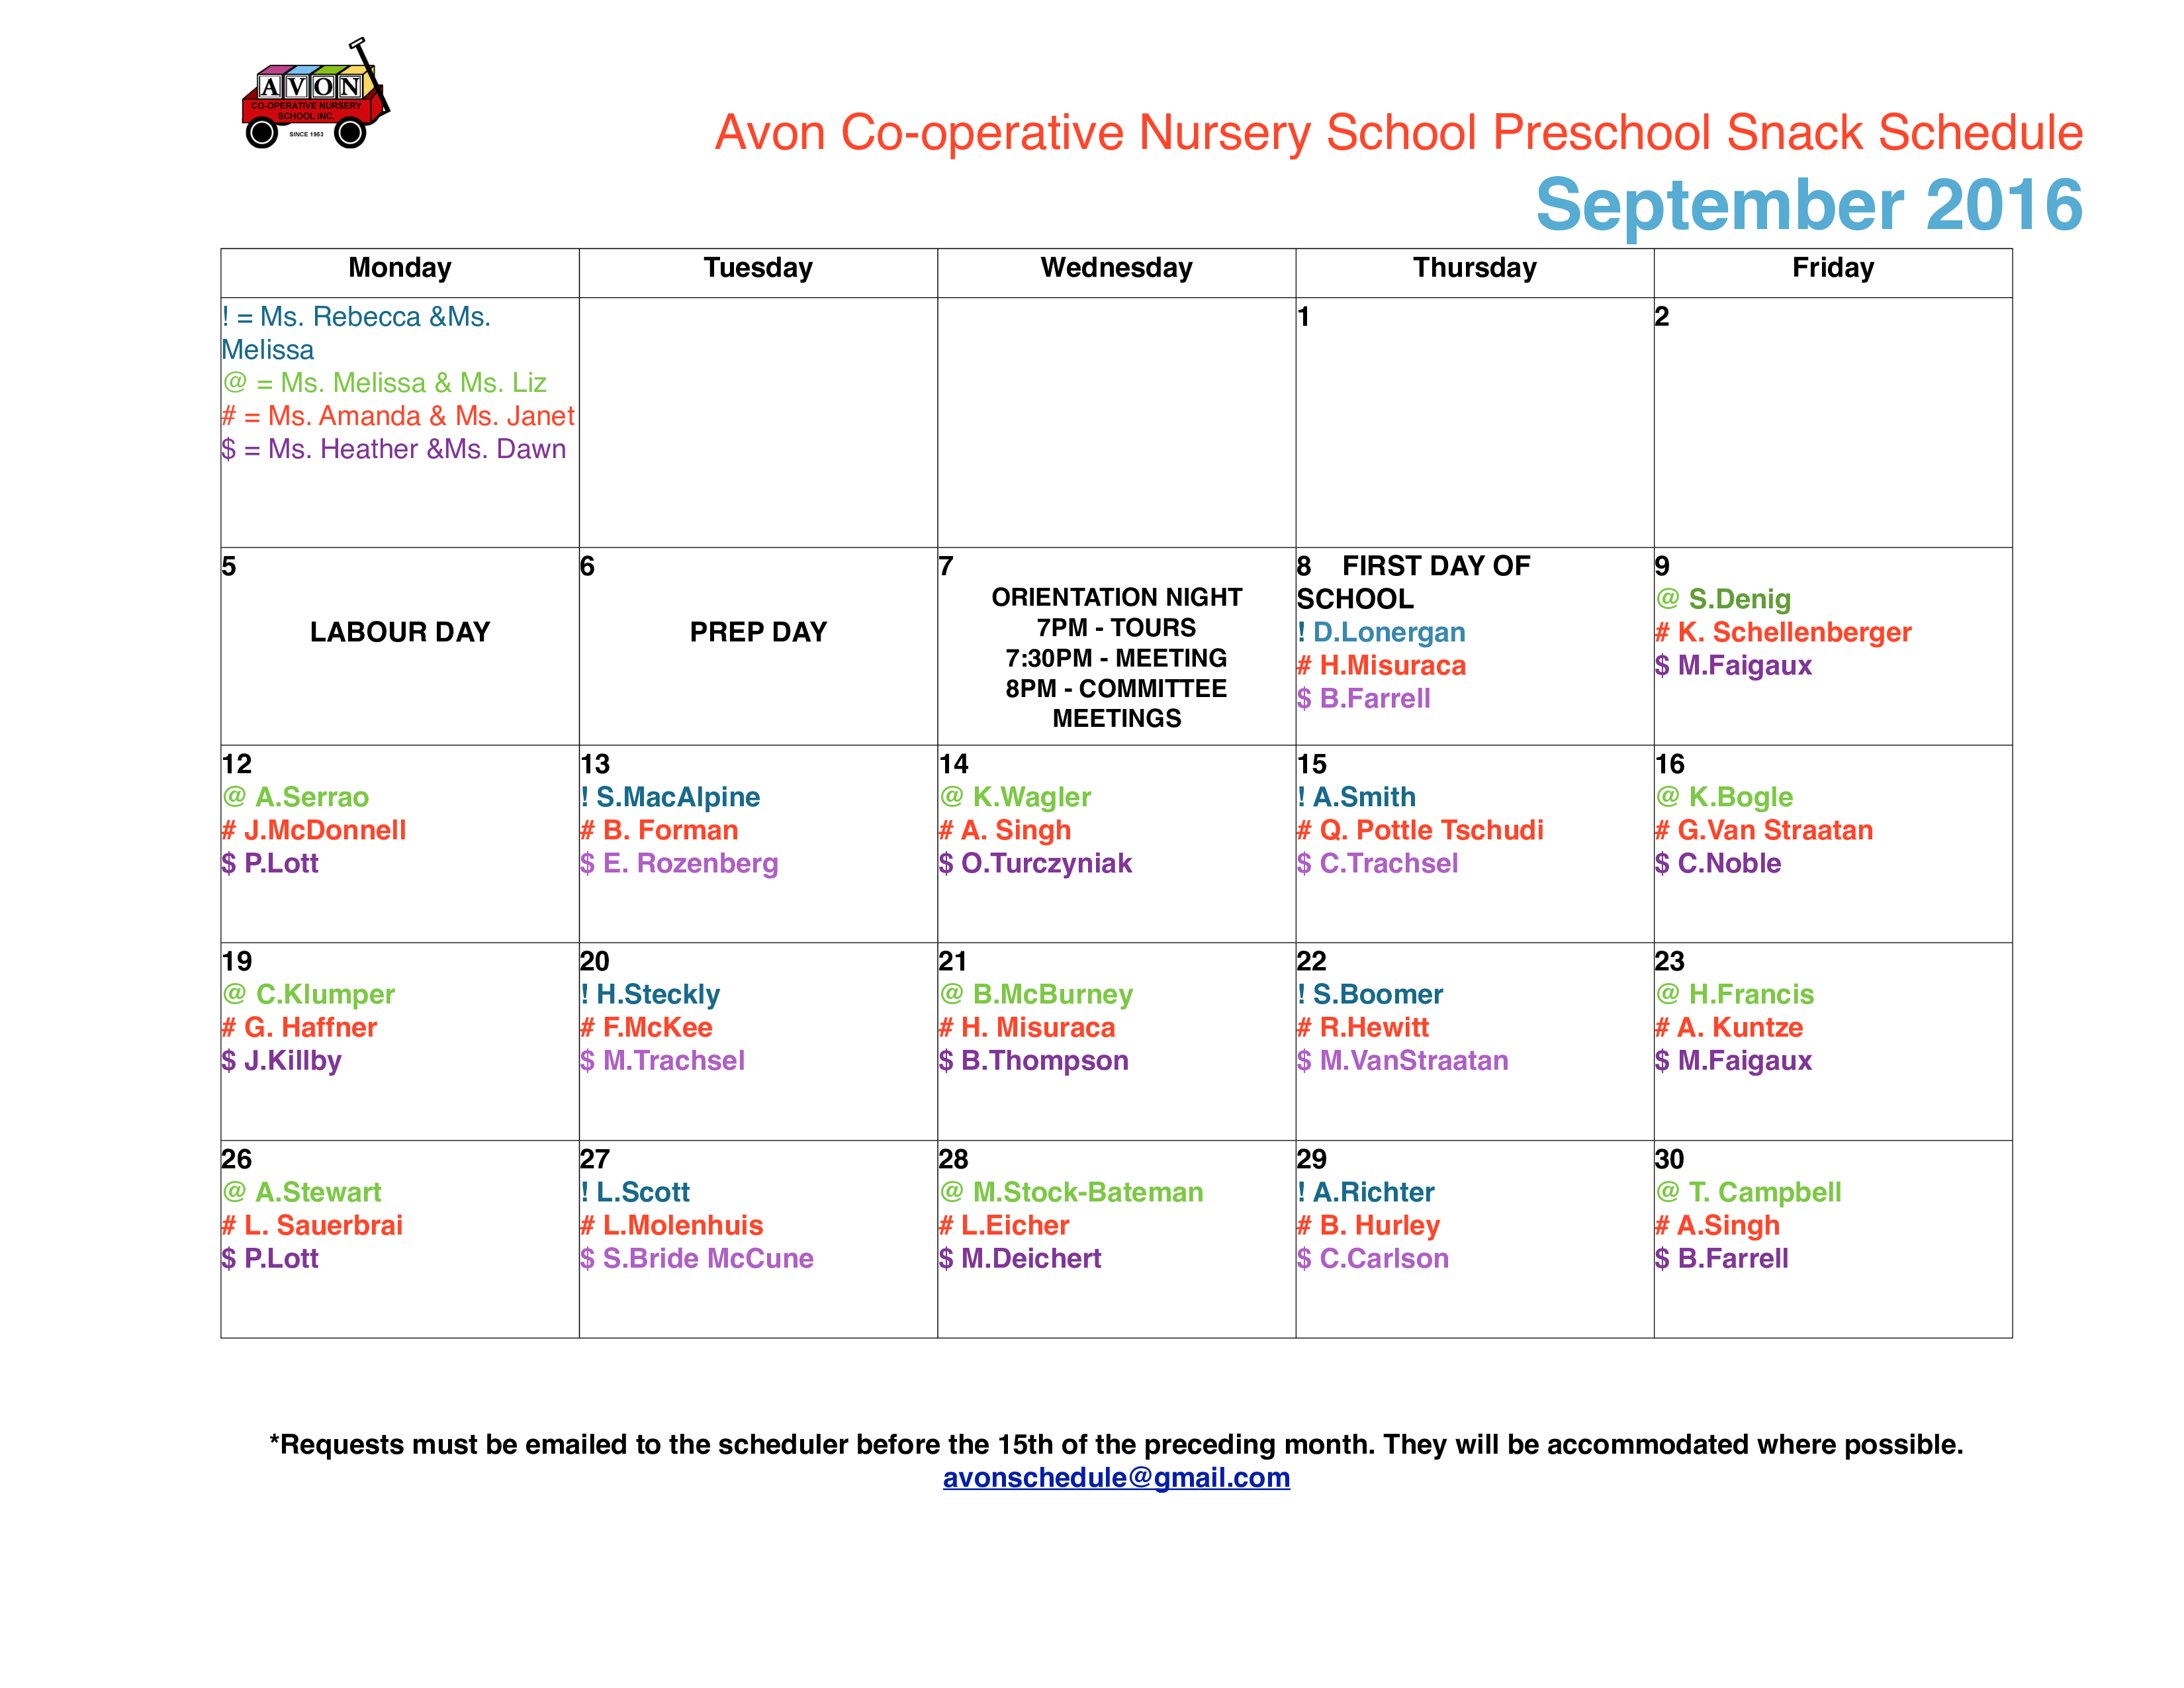 preschool snack schedule plantilla imagen principal